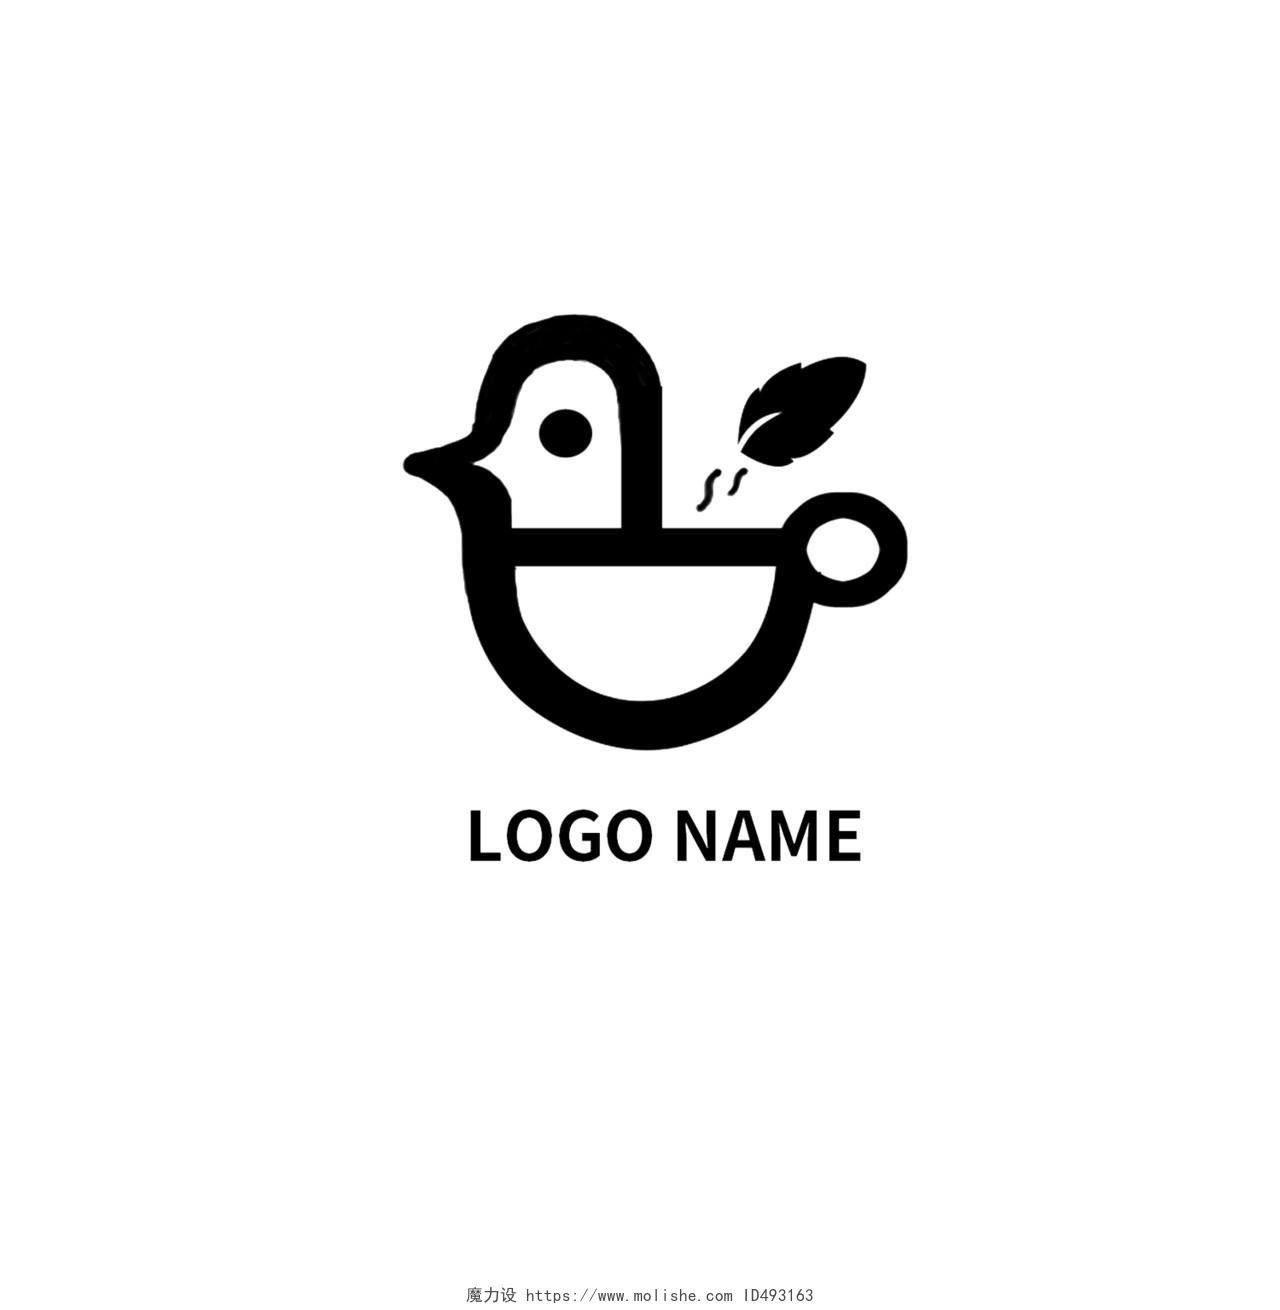 白色背景黑色标志logoname有趣可爱食品logo